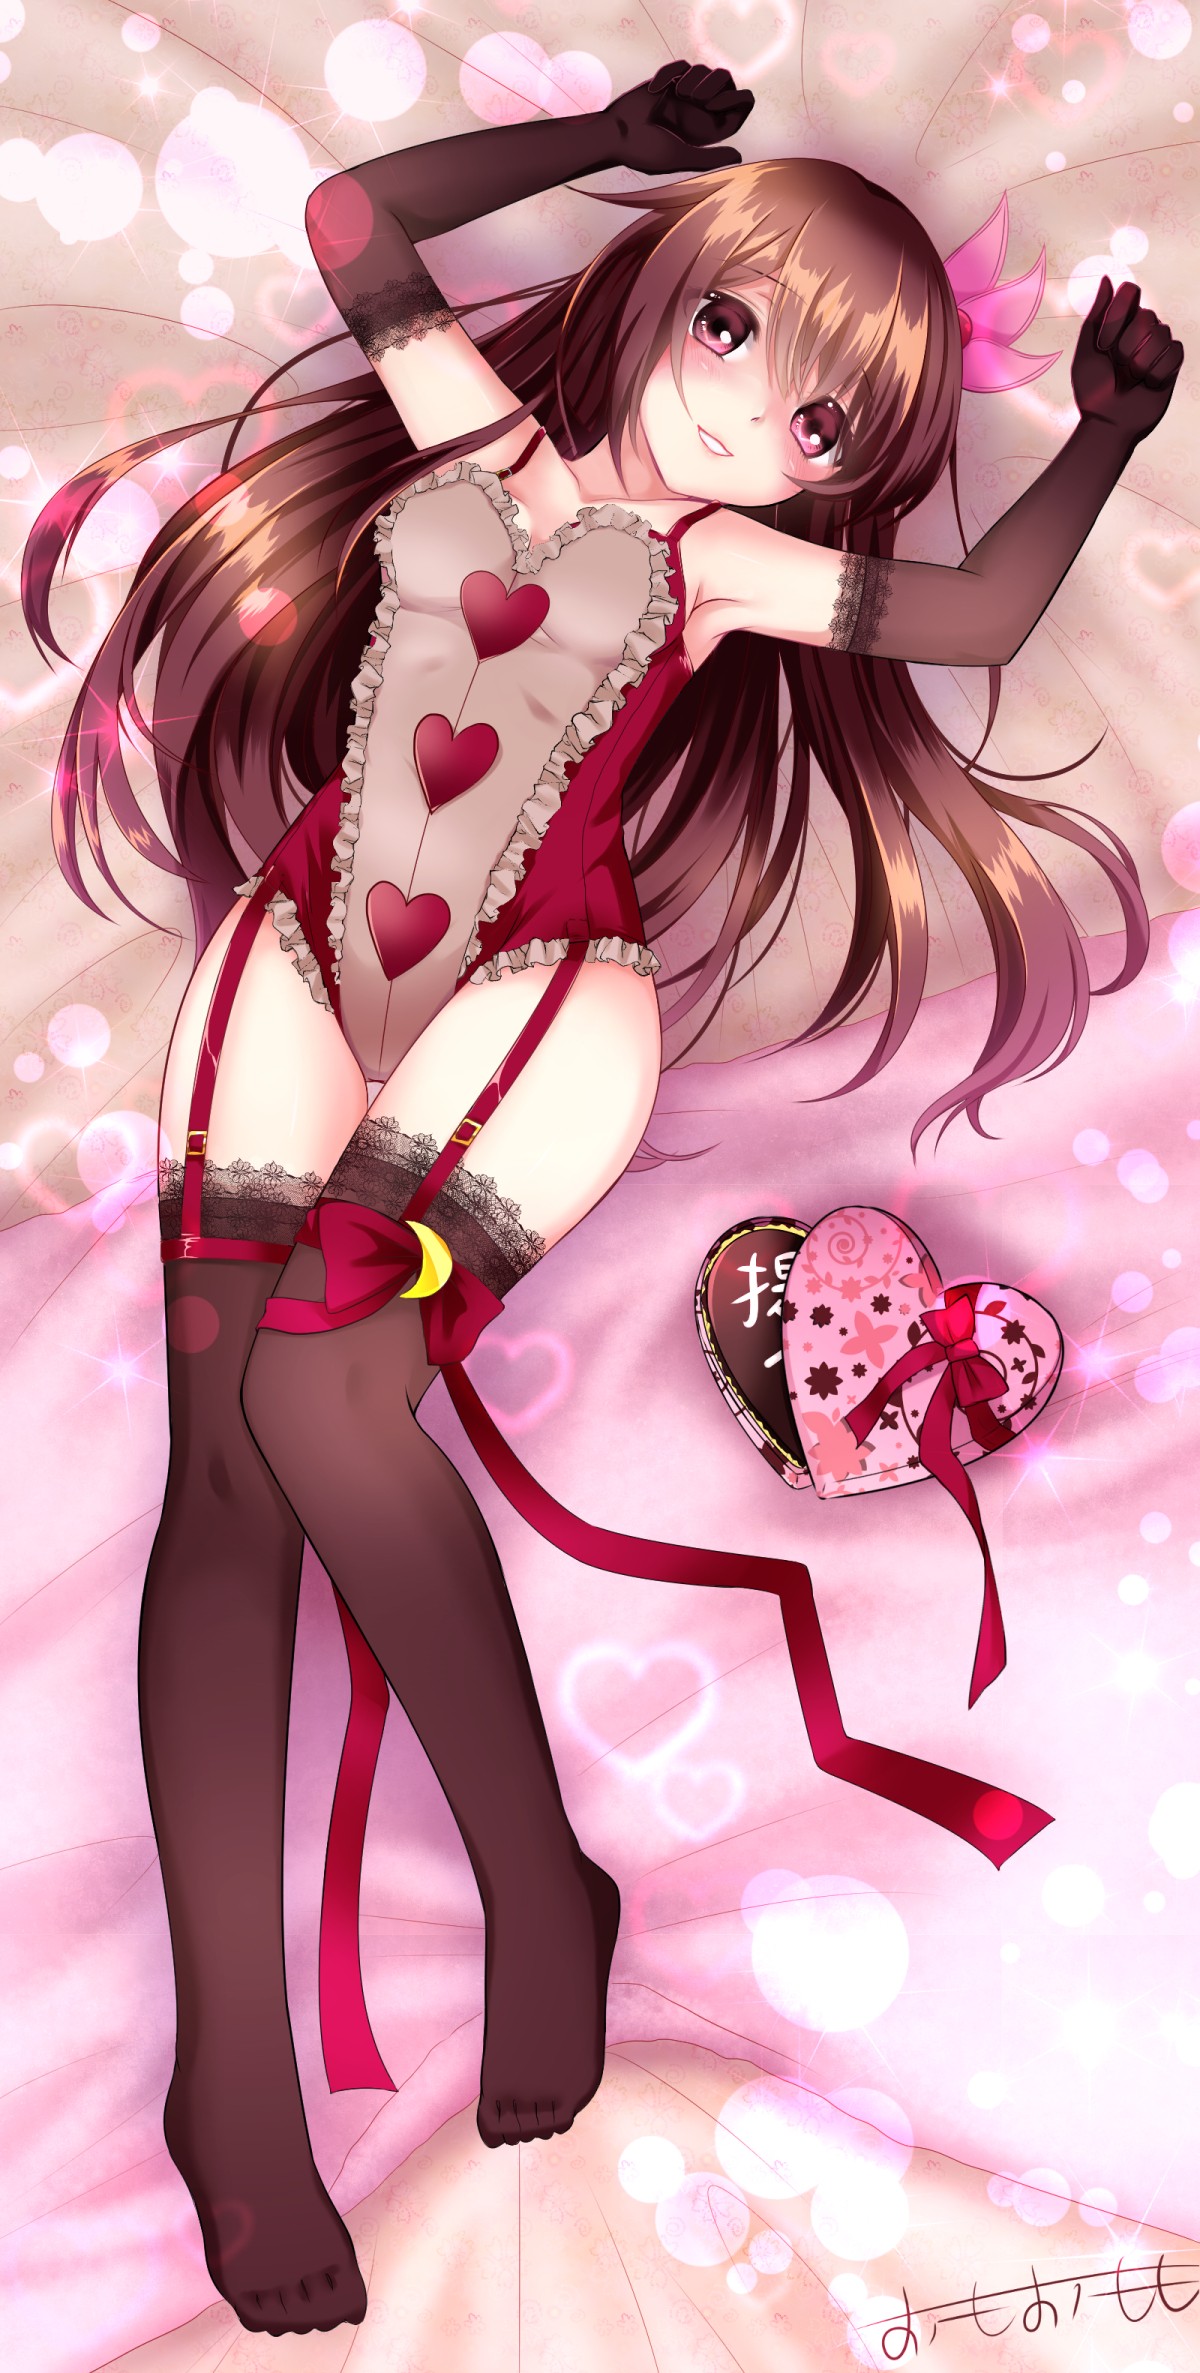 Anime 1200x2373 anime anime girls Kantai Collection Kisaragi (KanColle) stockings Pixiv black stockings long hair brunette Heart (Clothing) lingerie